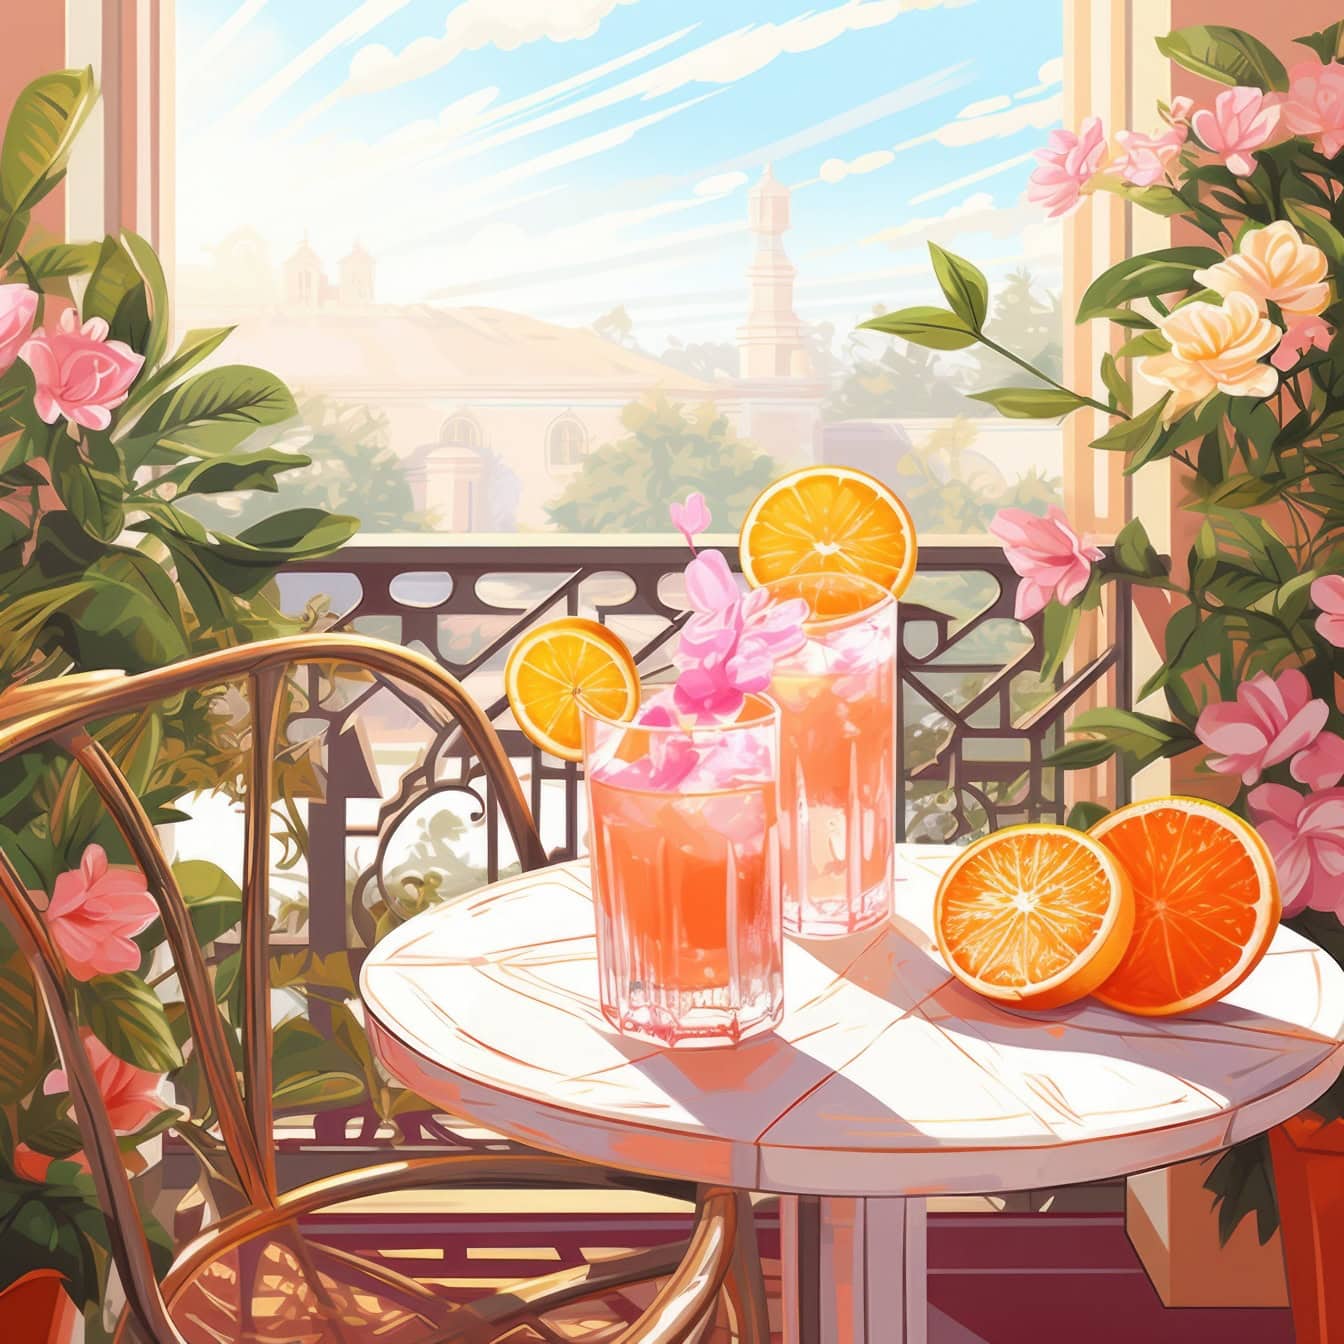 Grafisk illustration af et bord med en appelsinjuice, en appelsin og blomster på det